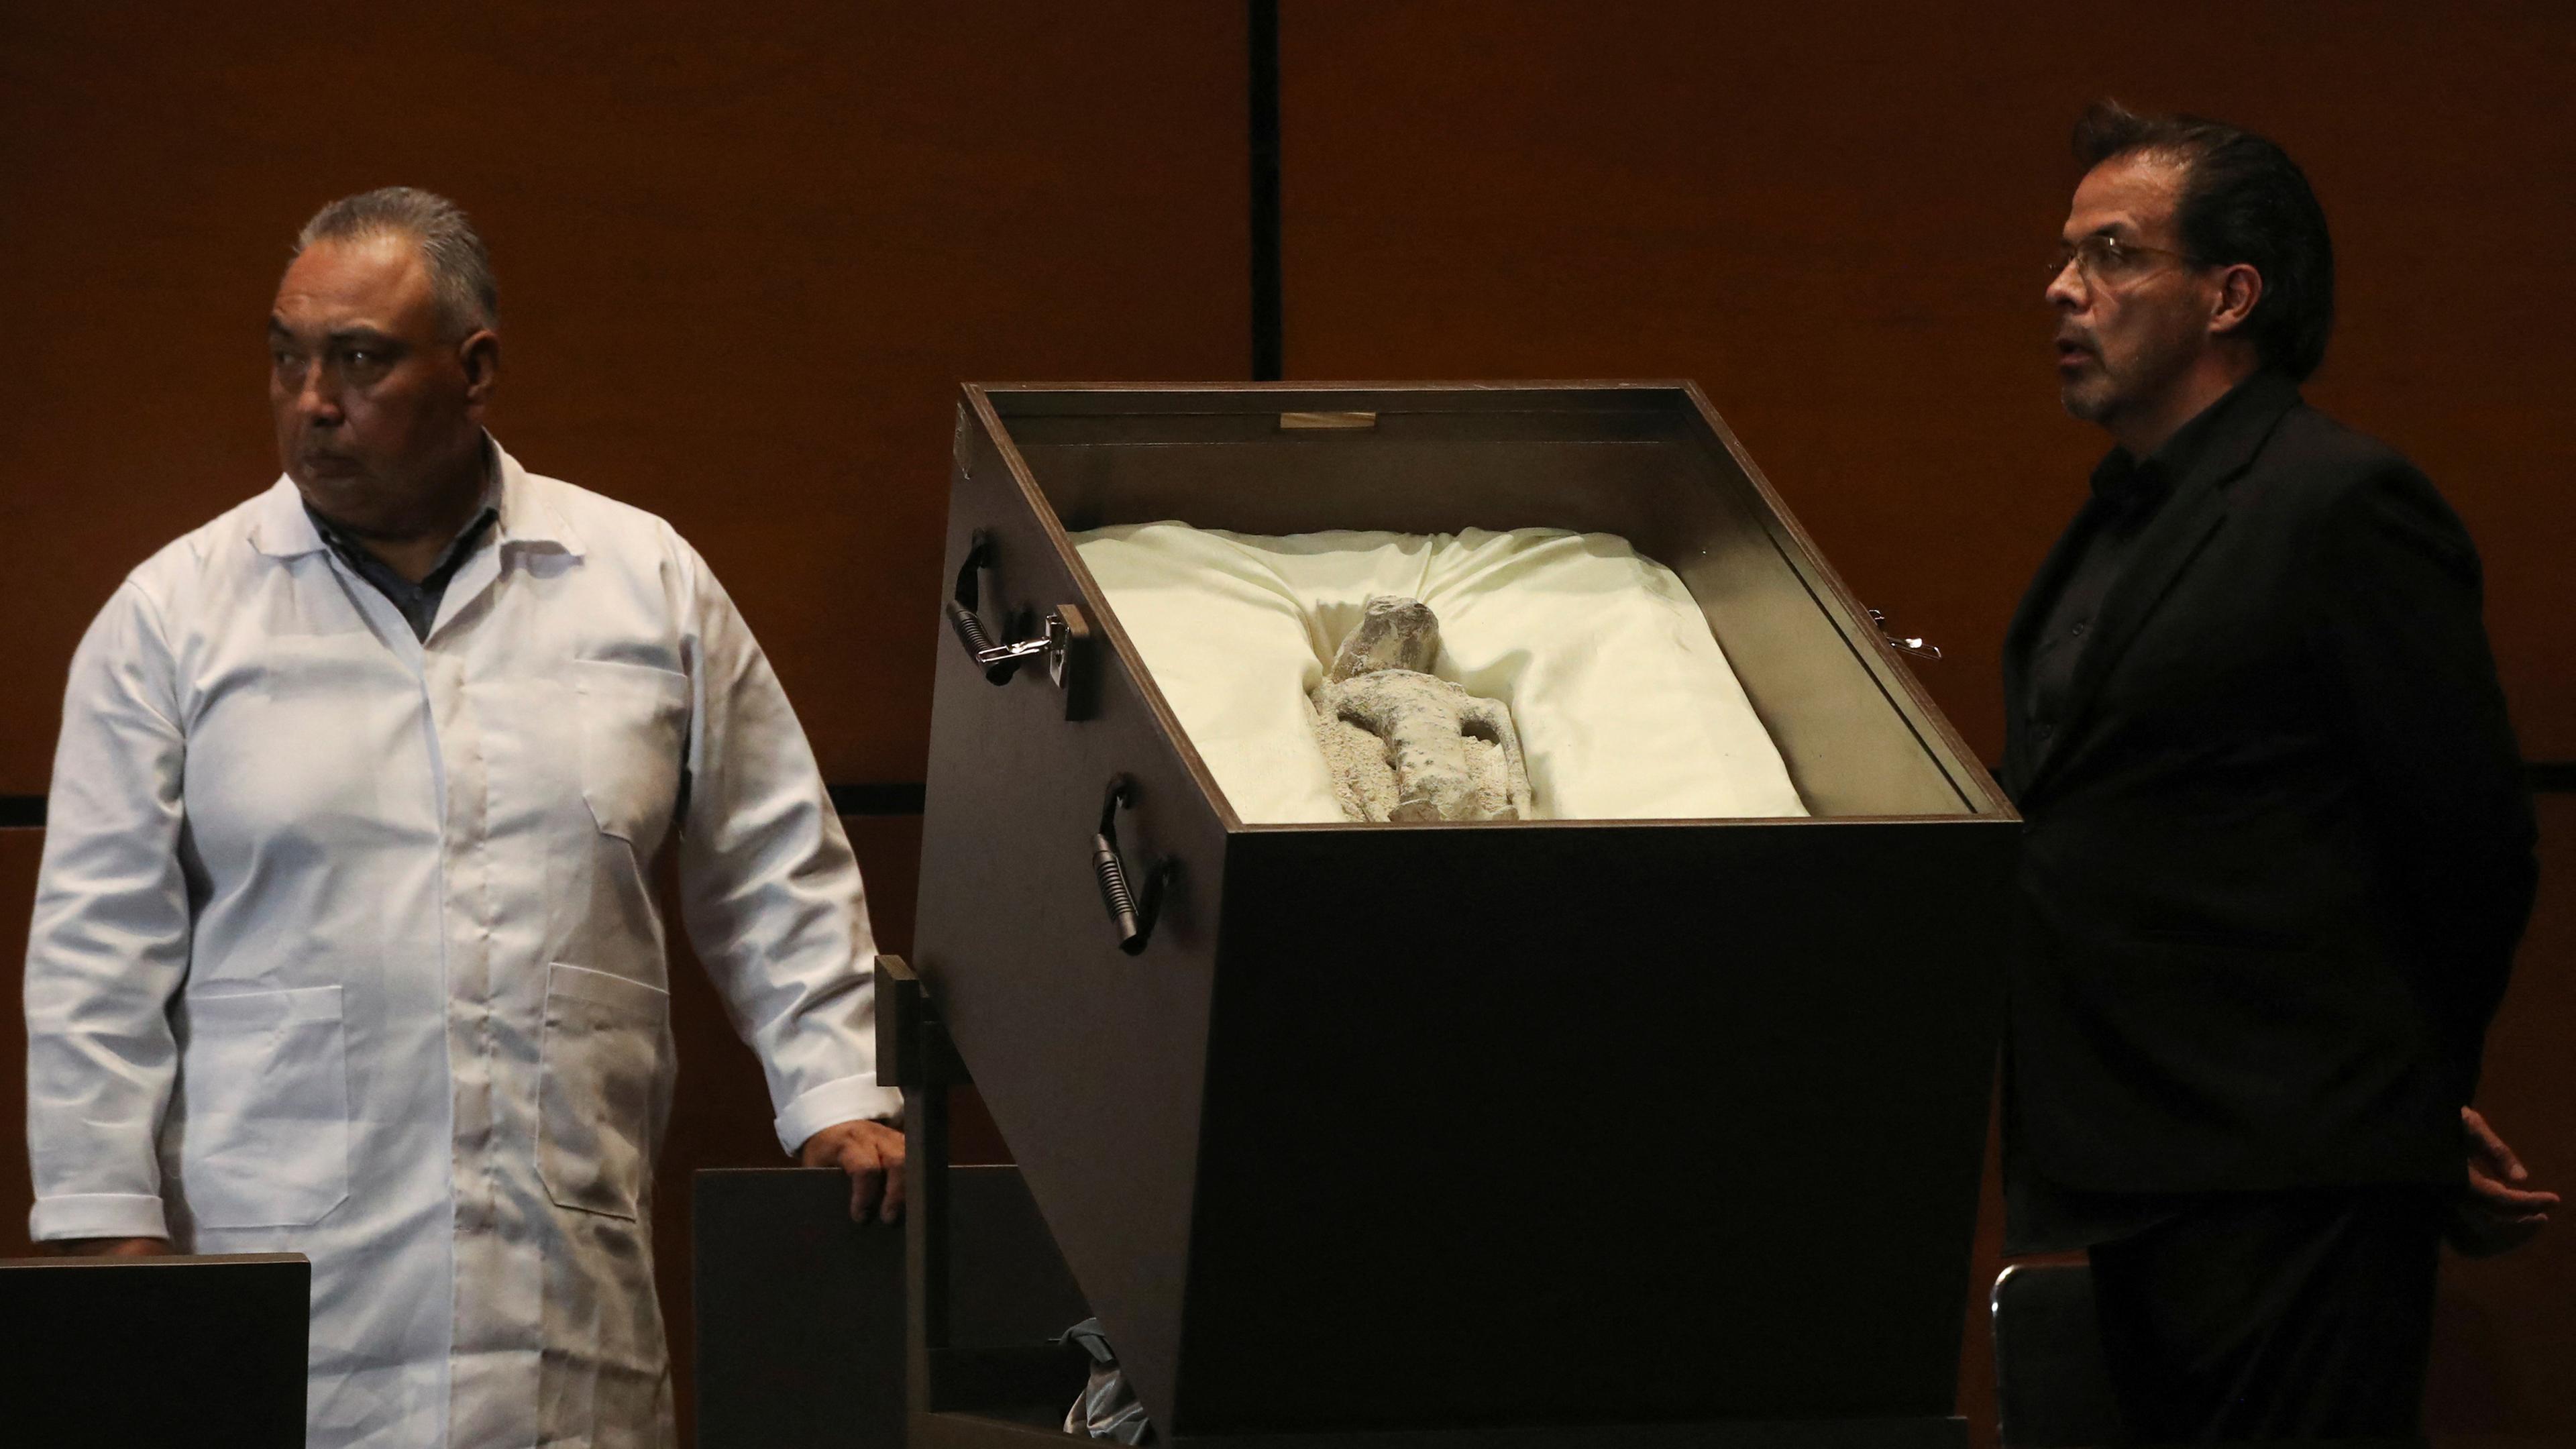 Überreste angeblich „nichtmenschlicher“ Wesen in Mexiko präsentiert